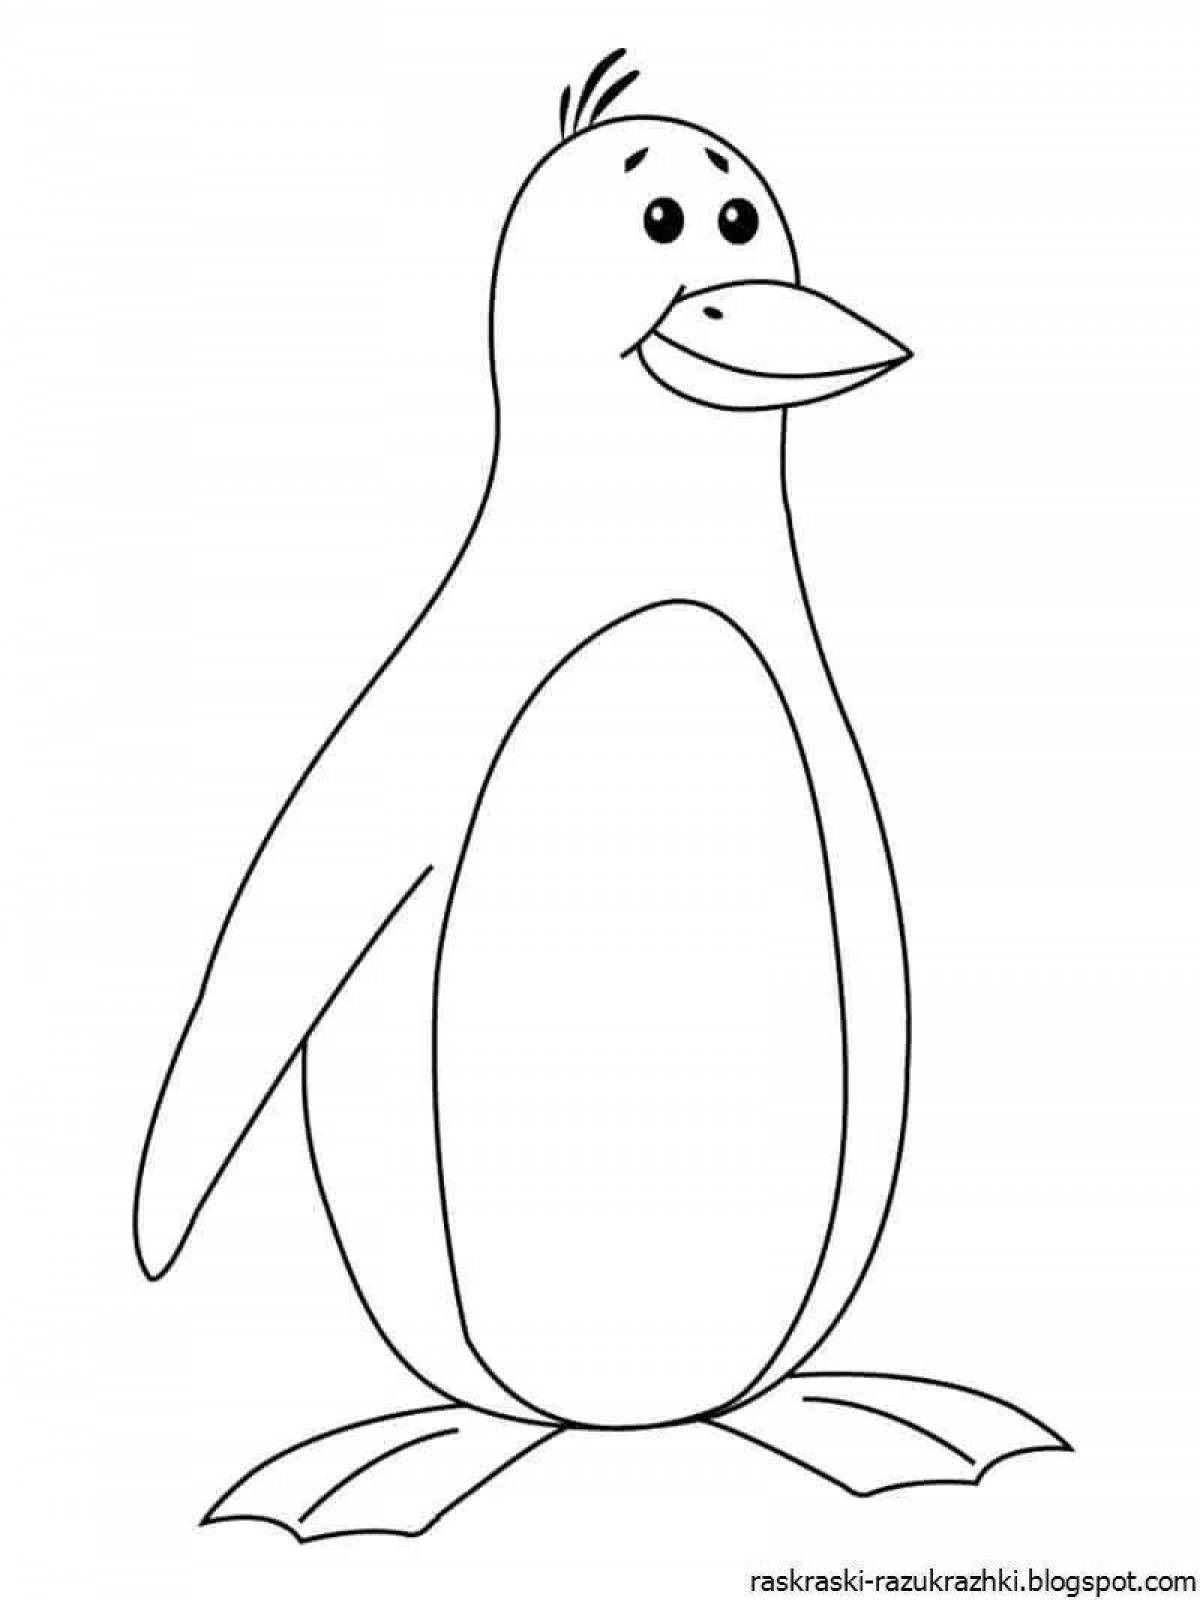 Забавный шаблон раскраски пингвинов